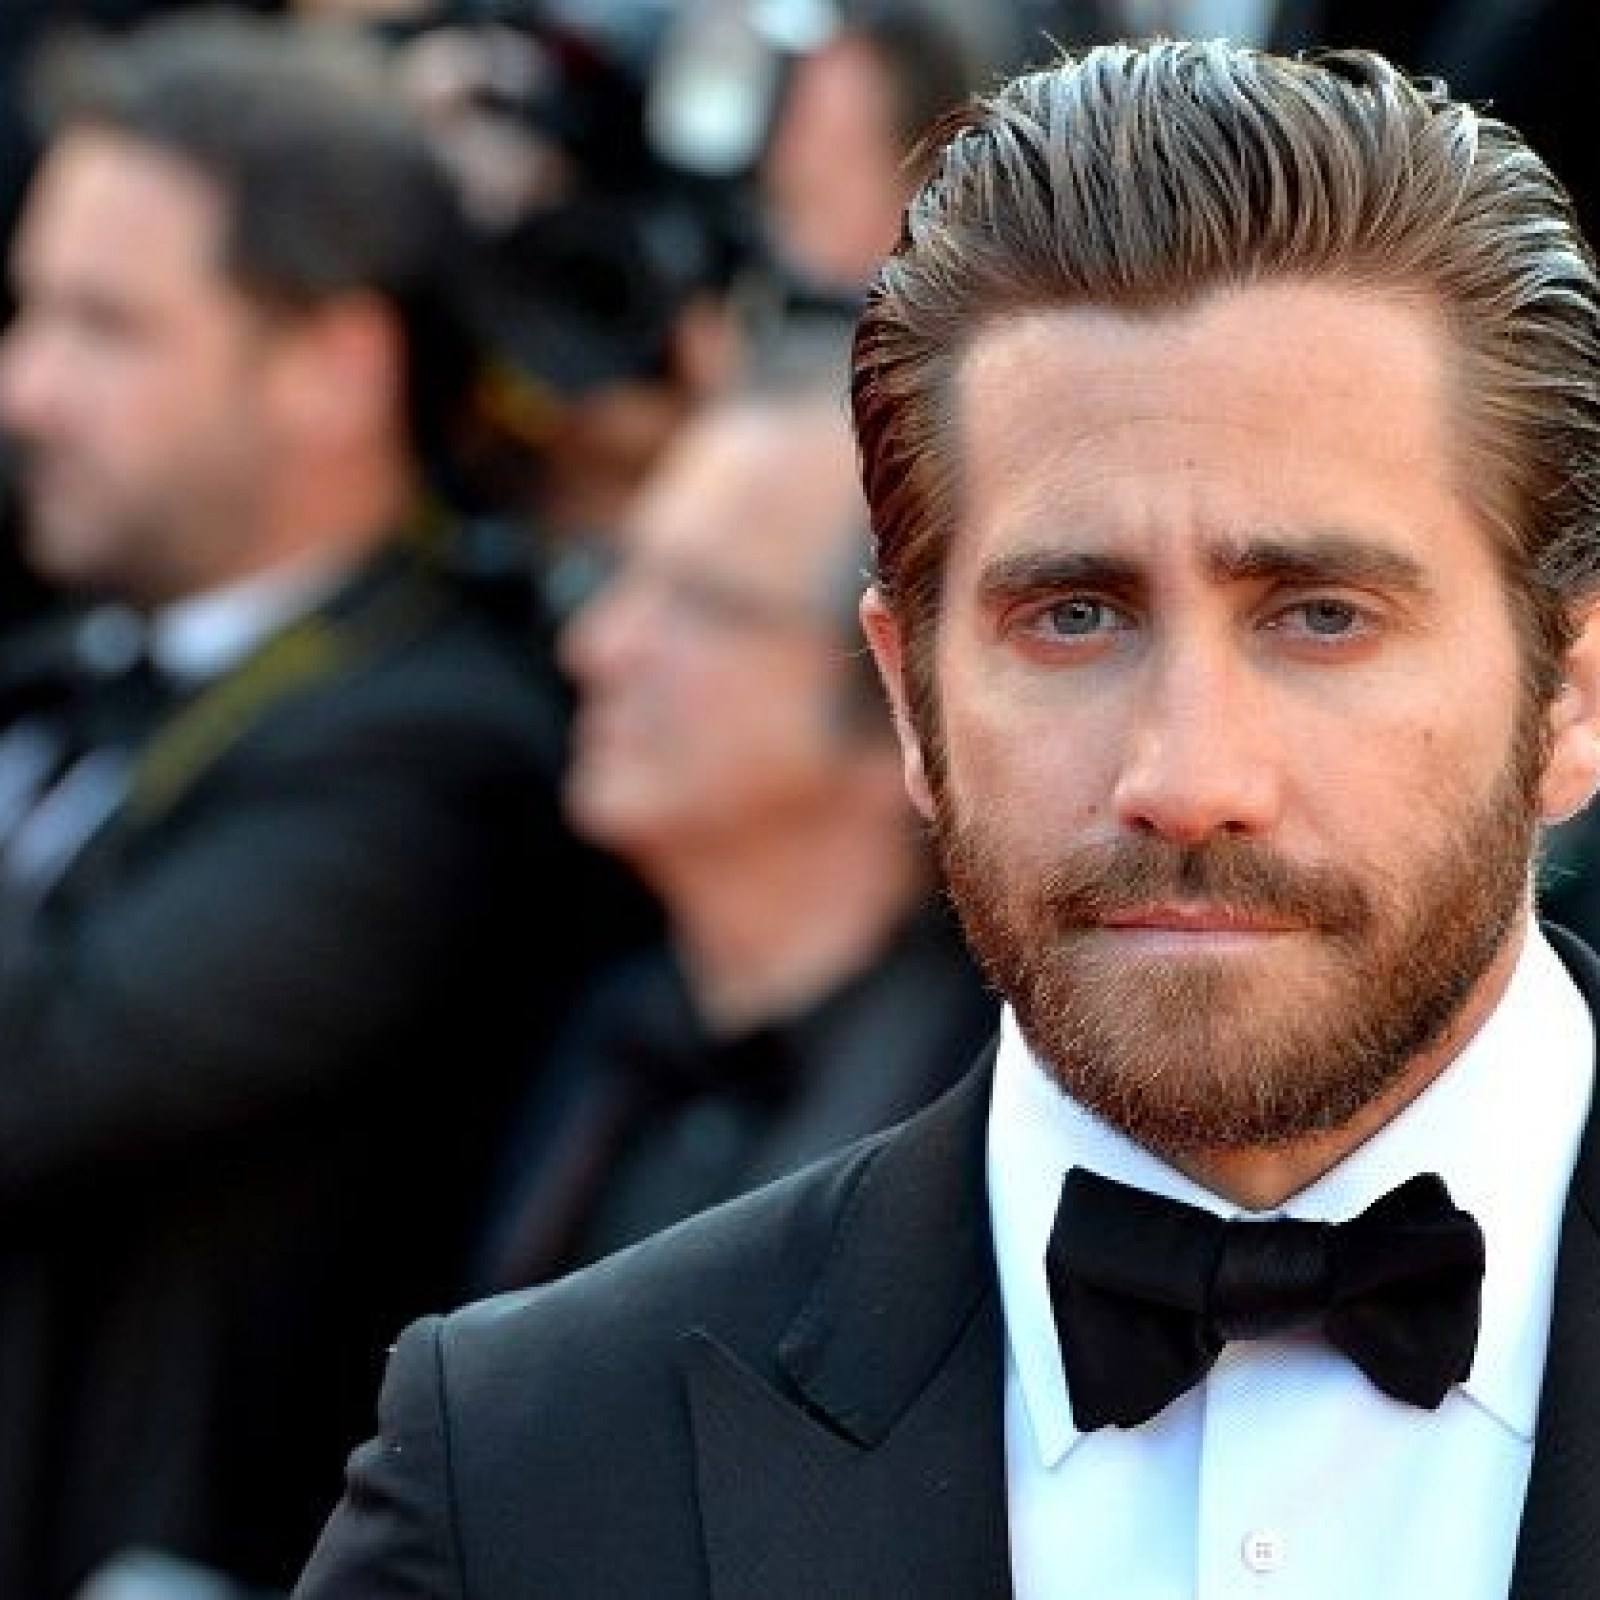 Beards may boost men's attractiveness